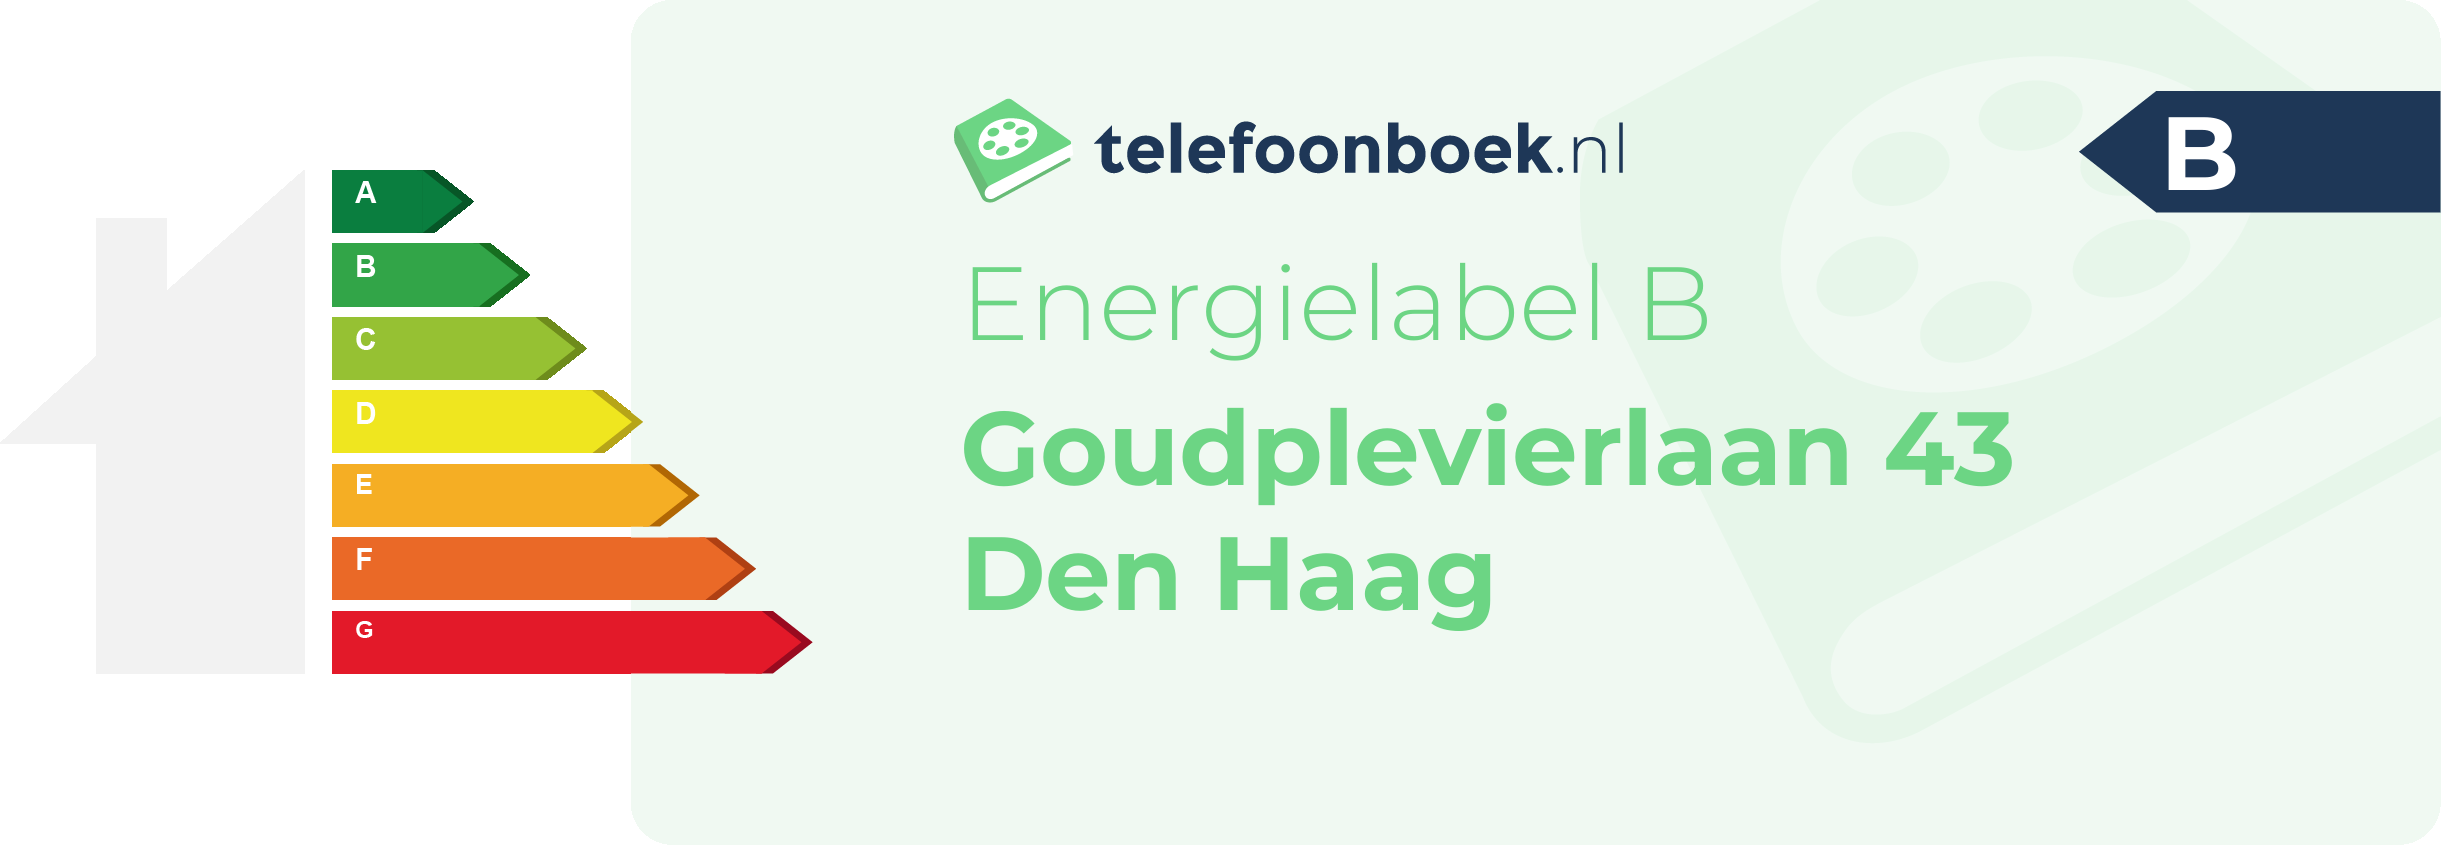 Energielabel Goudplevierlaan 43 Den Haag